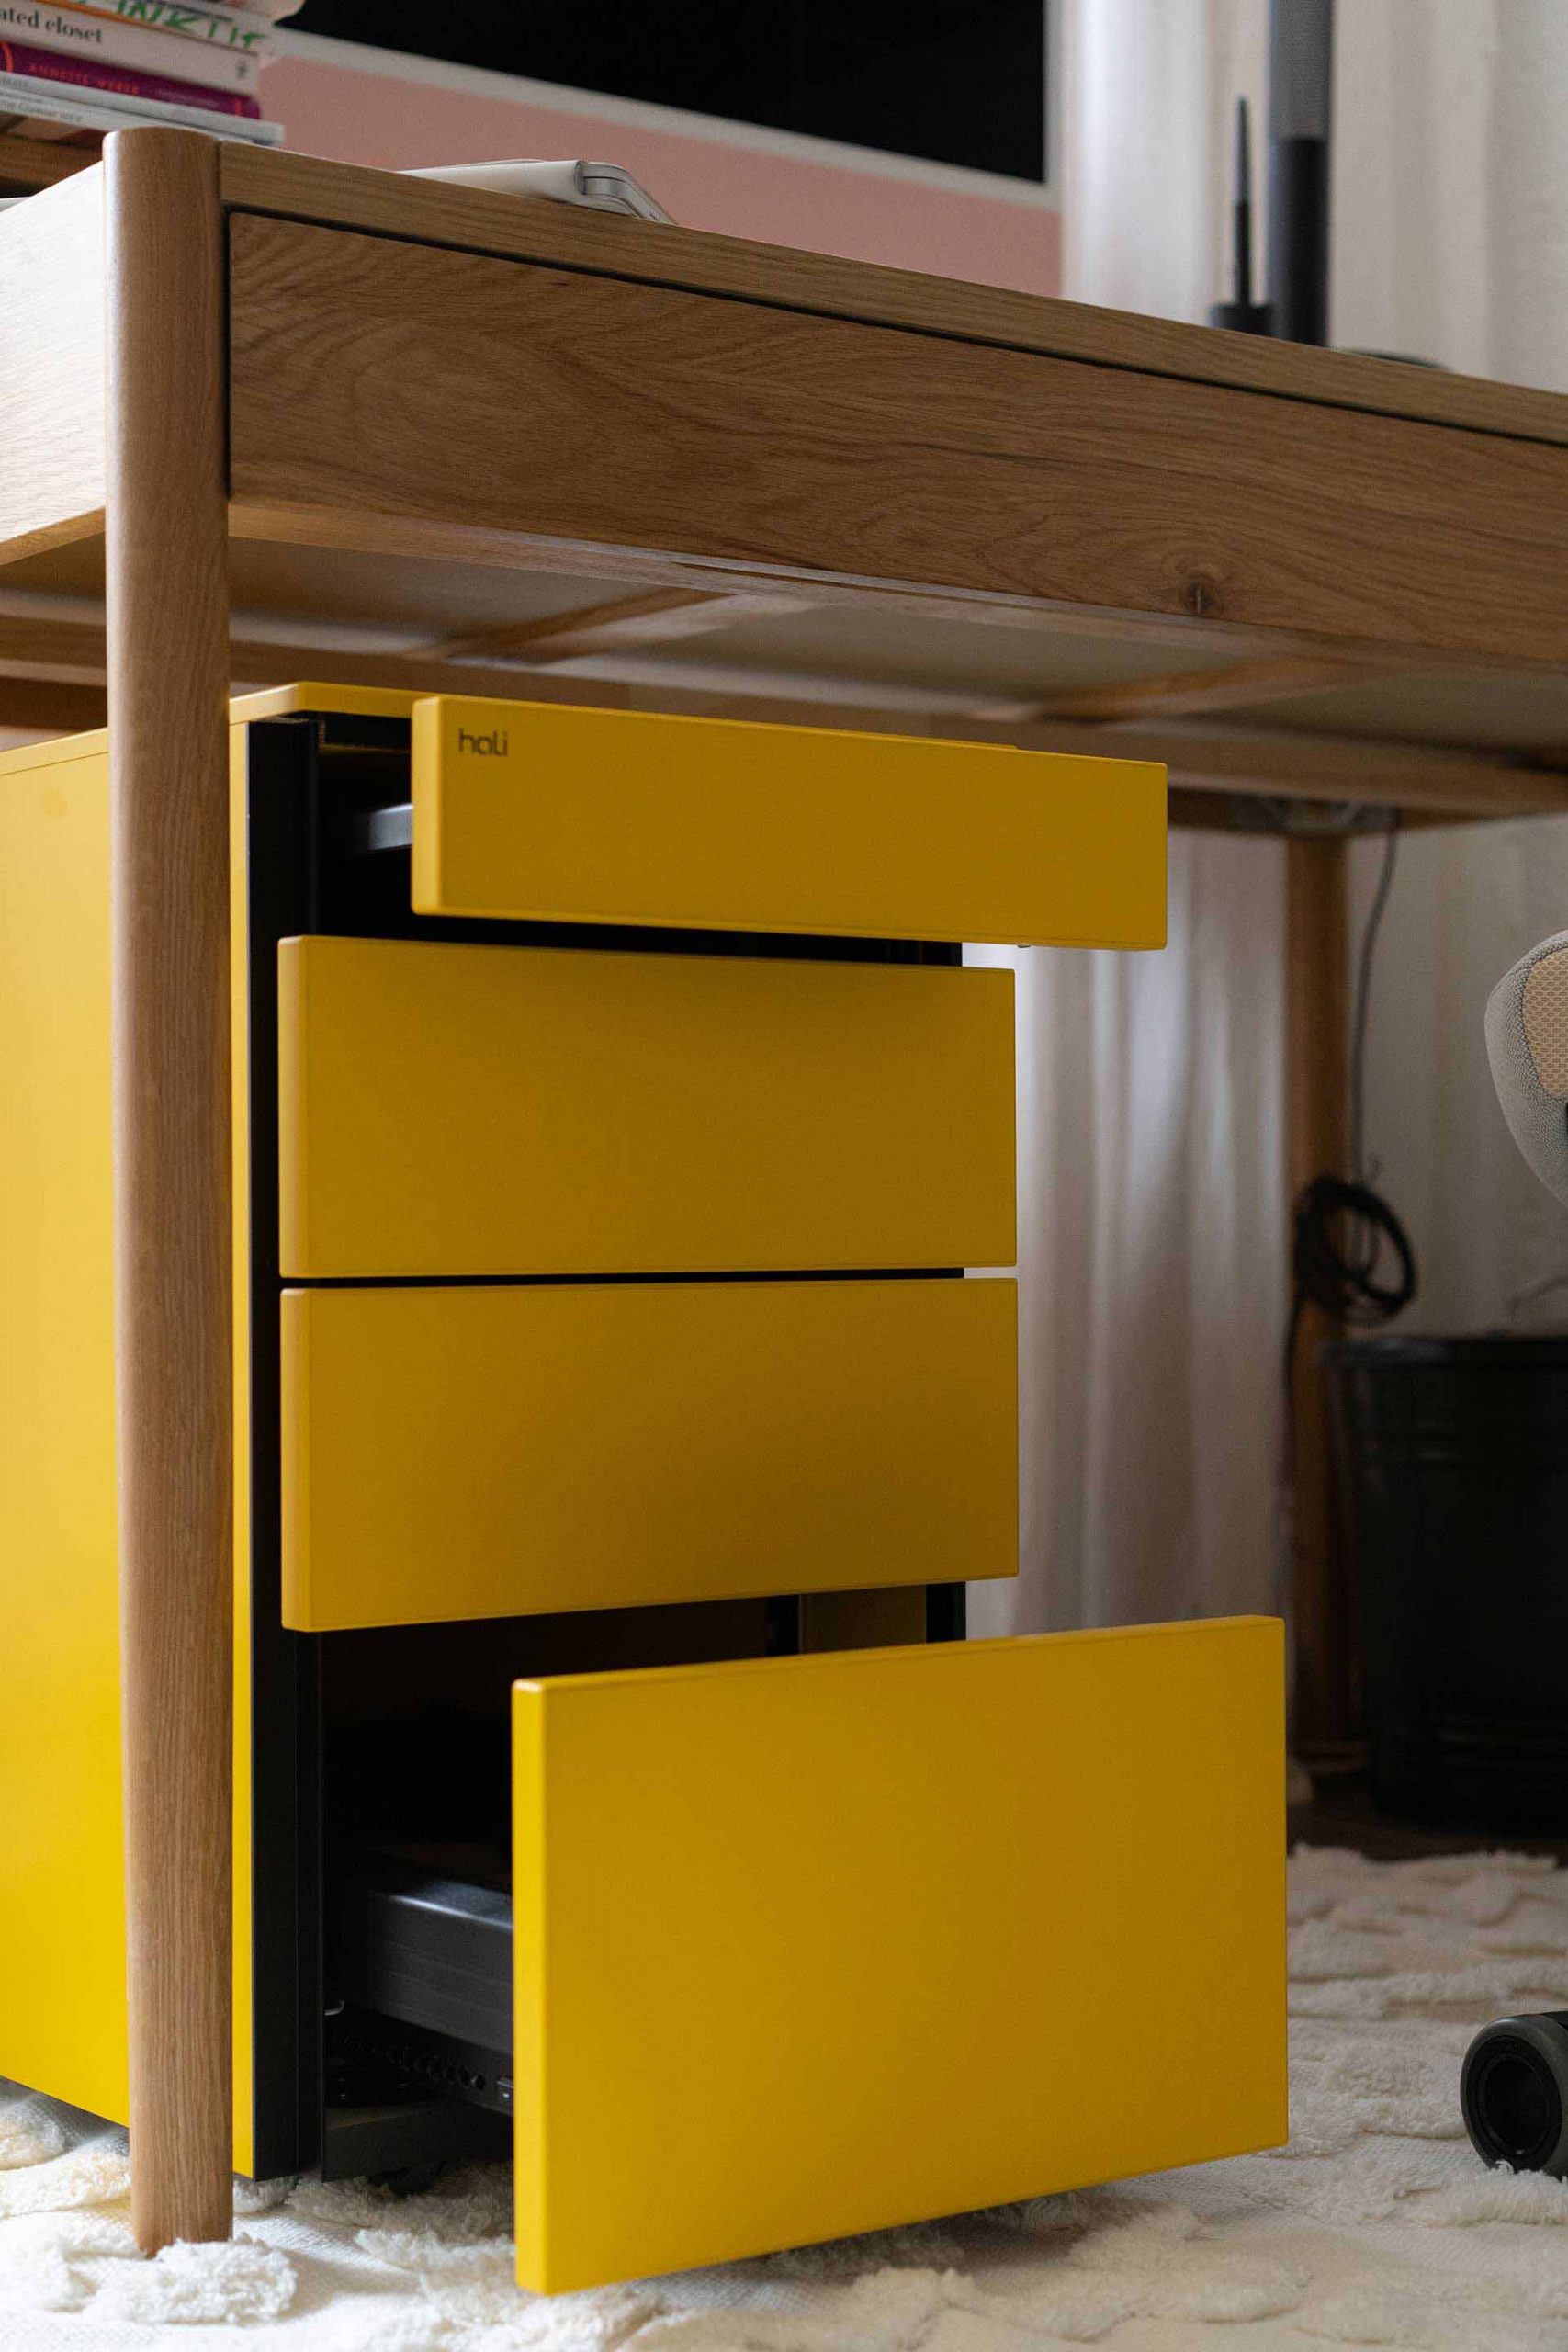 Anzeige. Gestalte deinen Arbeitsplatz zu Hause mit einem stylischen gelben Rollcontainer von Hali.at und organisiere deinen Schreibtisch in Windeseile.